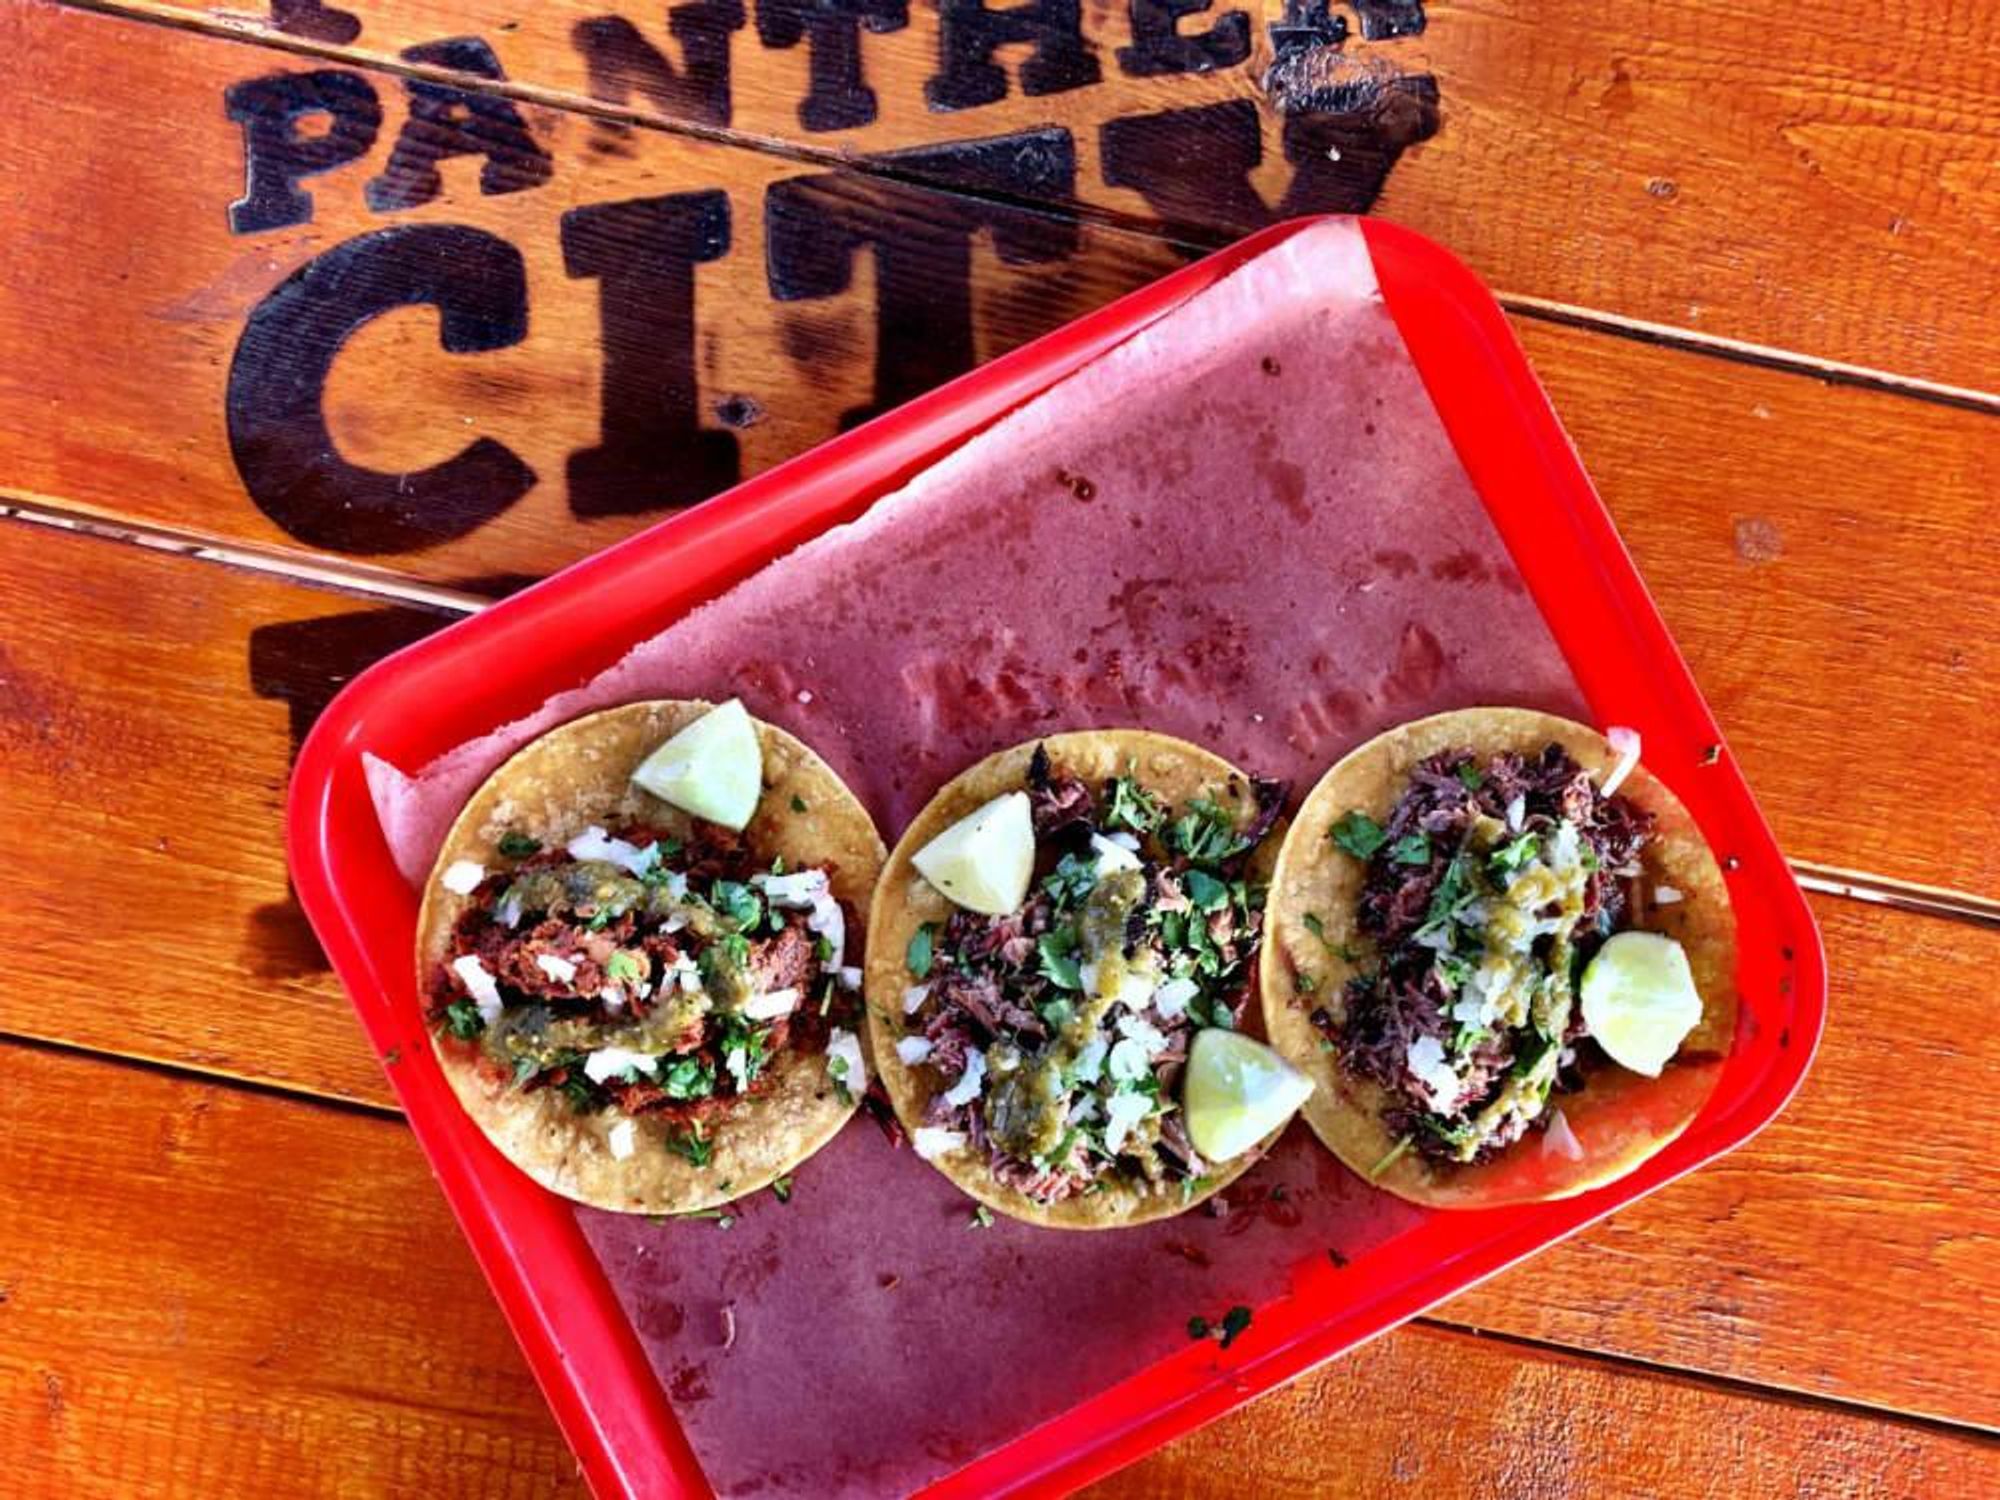 Panther City tacos